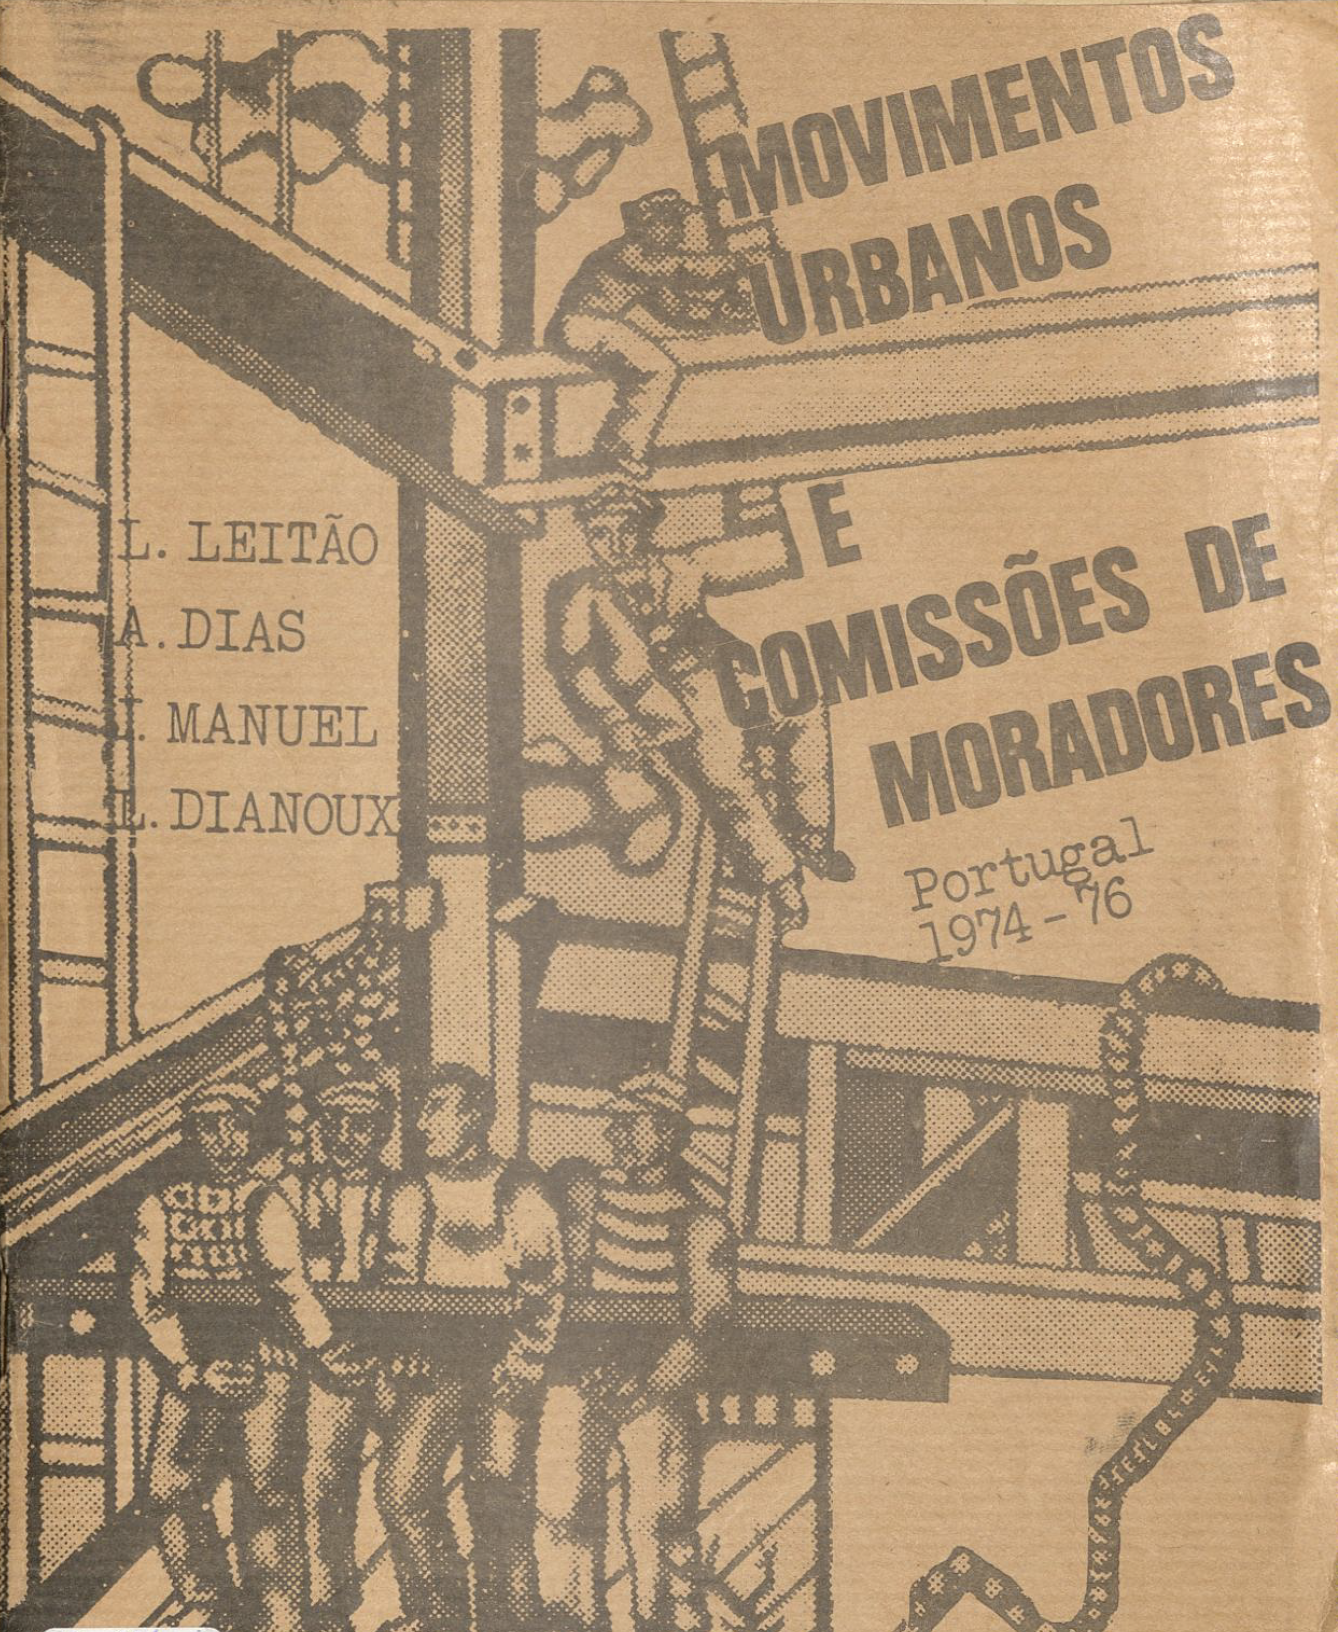 Movimentos Urbanos e Comissões de Moradores - Portugal 1974 – 1976